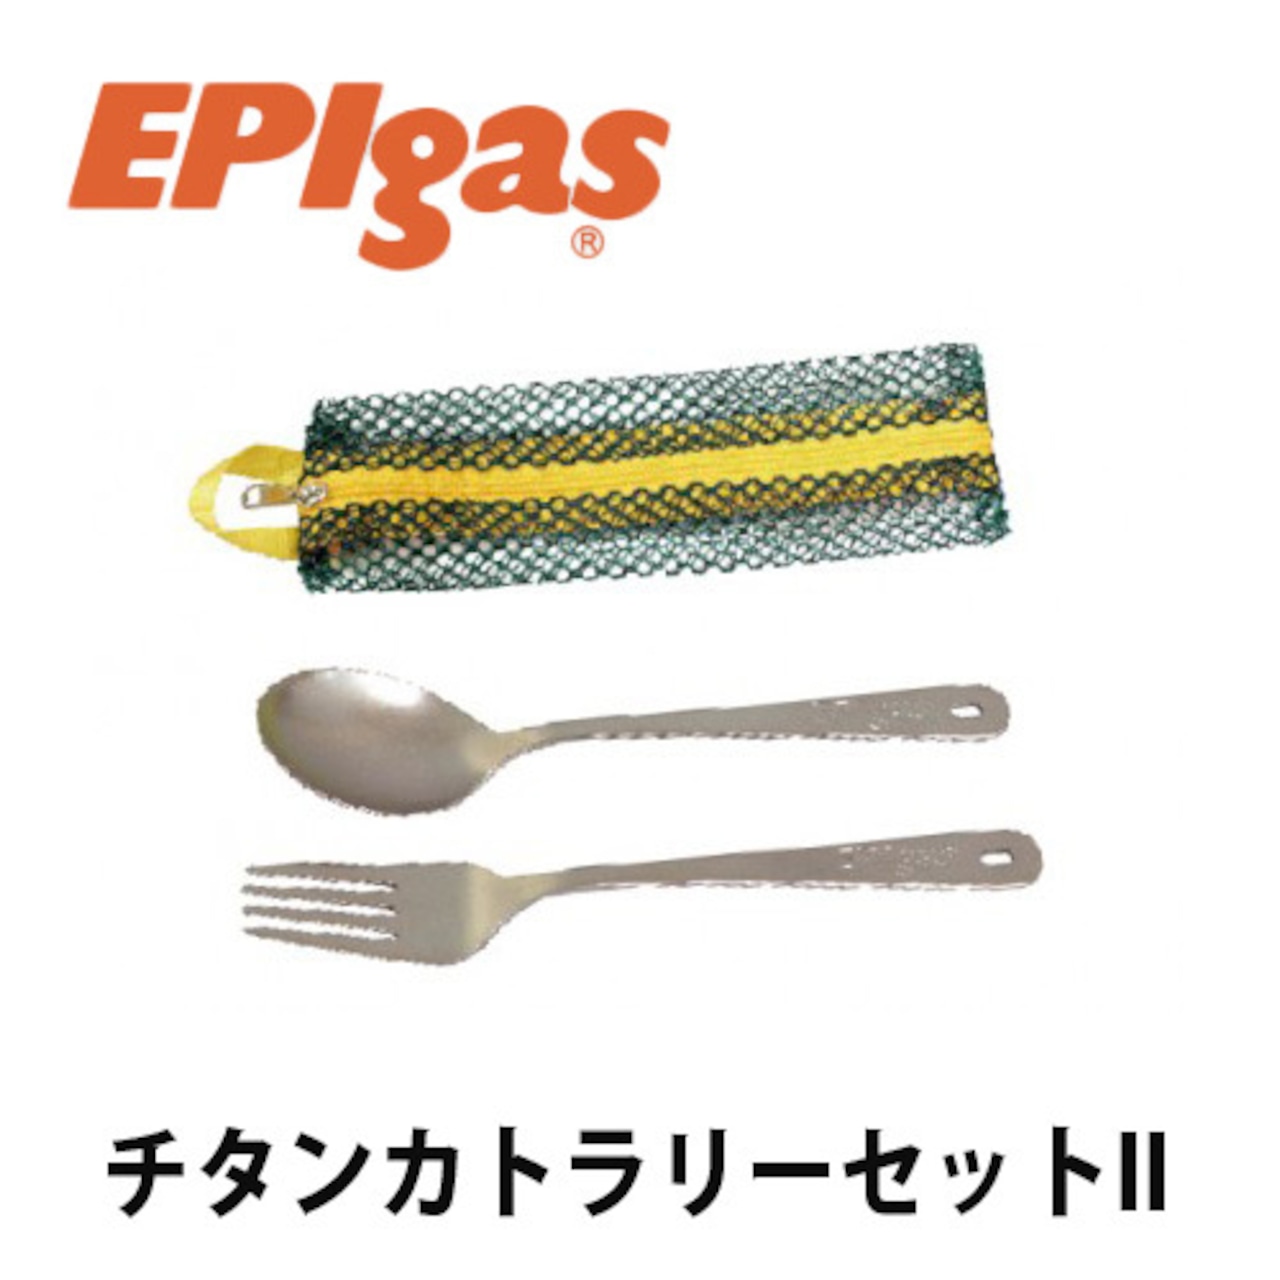 EPIgas(イーピーアイ ガス) チタンカトラリーセットII 軽量 高耐久性 携帯